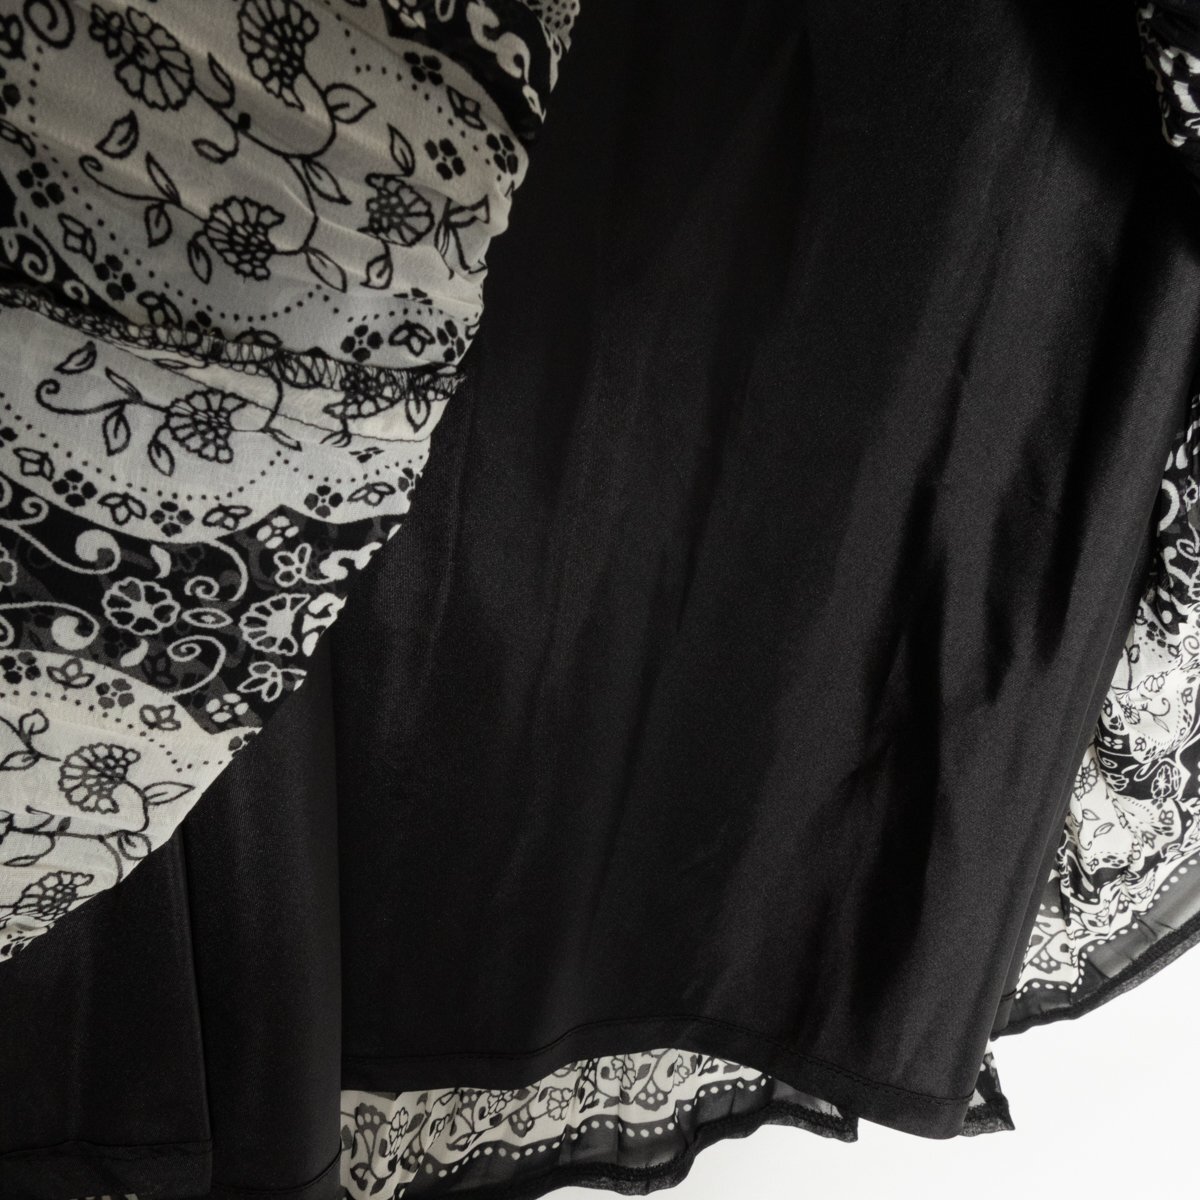 SPECCHIO スペッチオ セットアップ プリーツトップス フレアスカート 総柄 薄手 40 ポリエステル100% ブラック 黒 綺麗め カジュアルの画像4